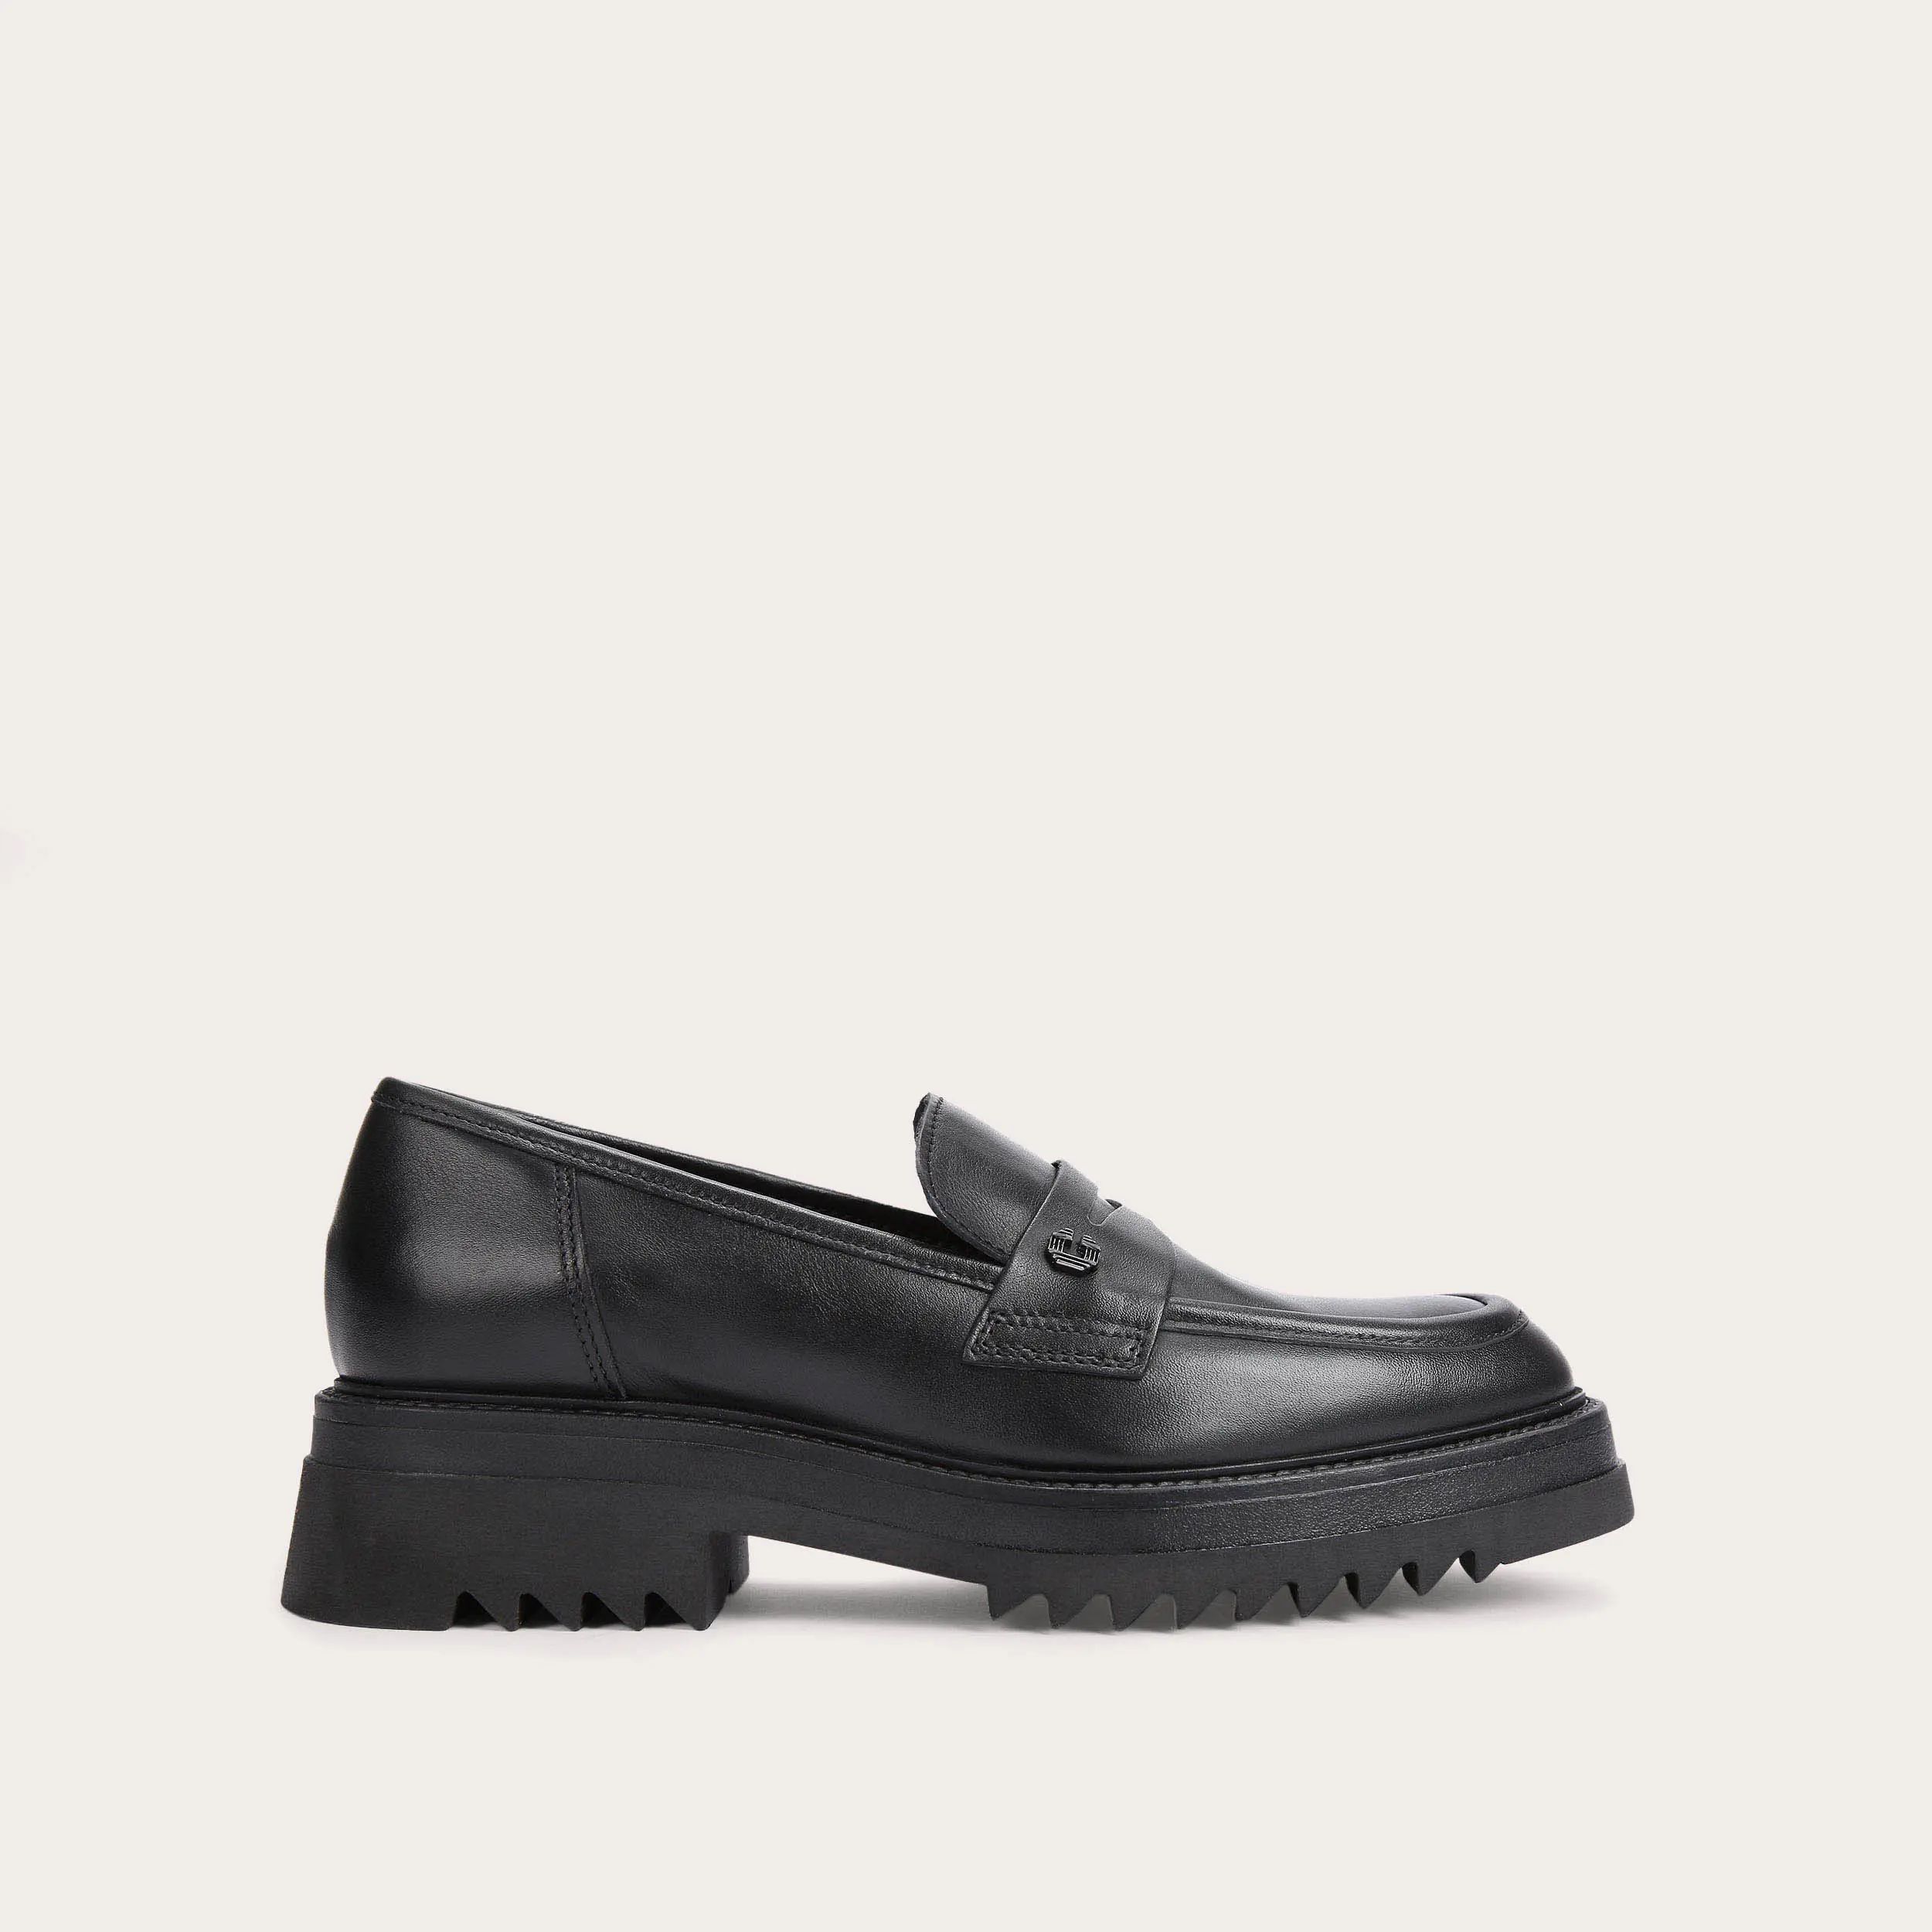 STRONG LOAFER Black Leather Slip On Loafers by CARVELA | Carvela